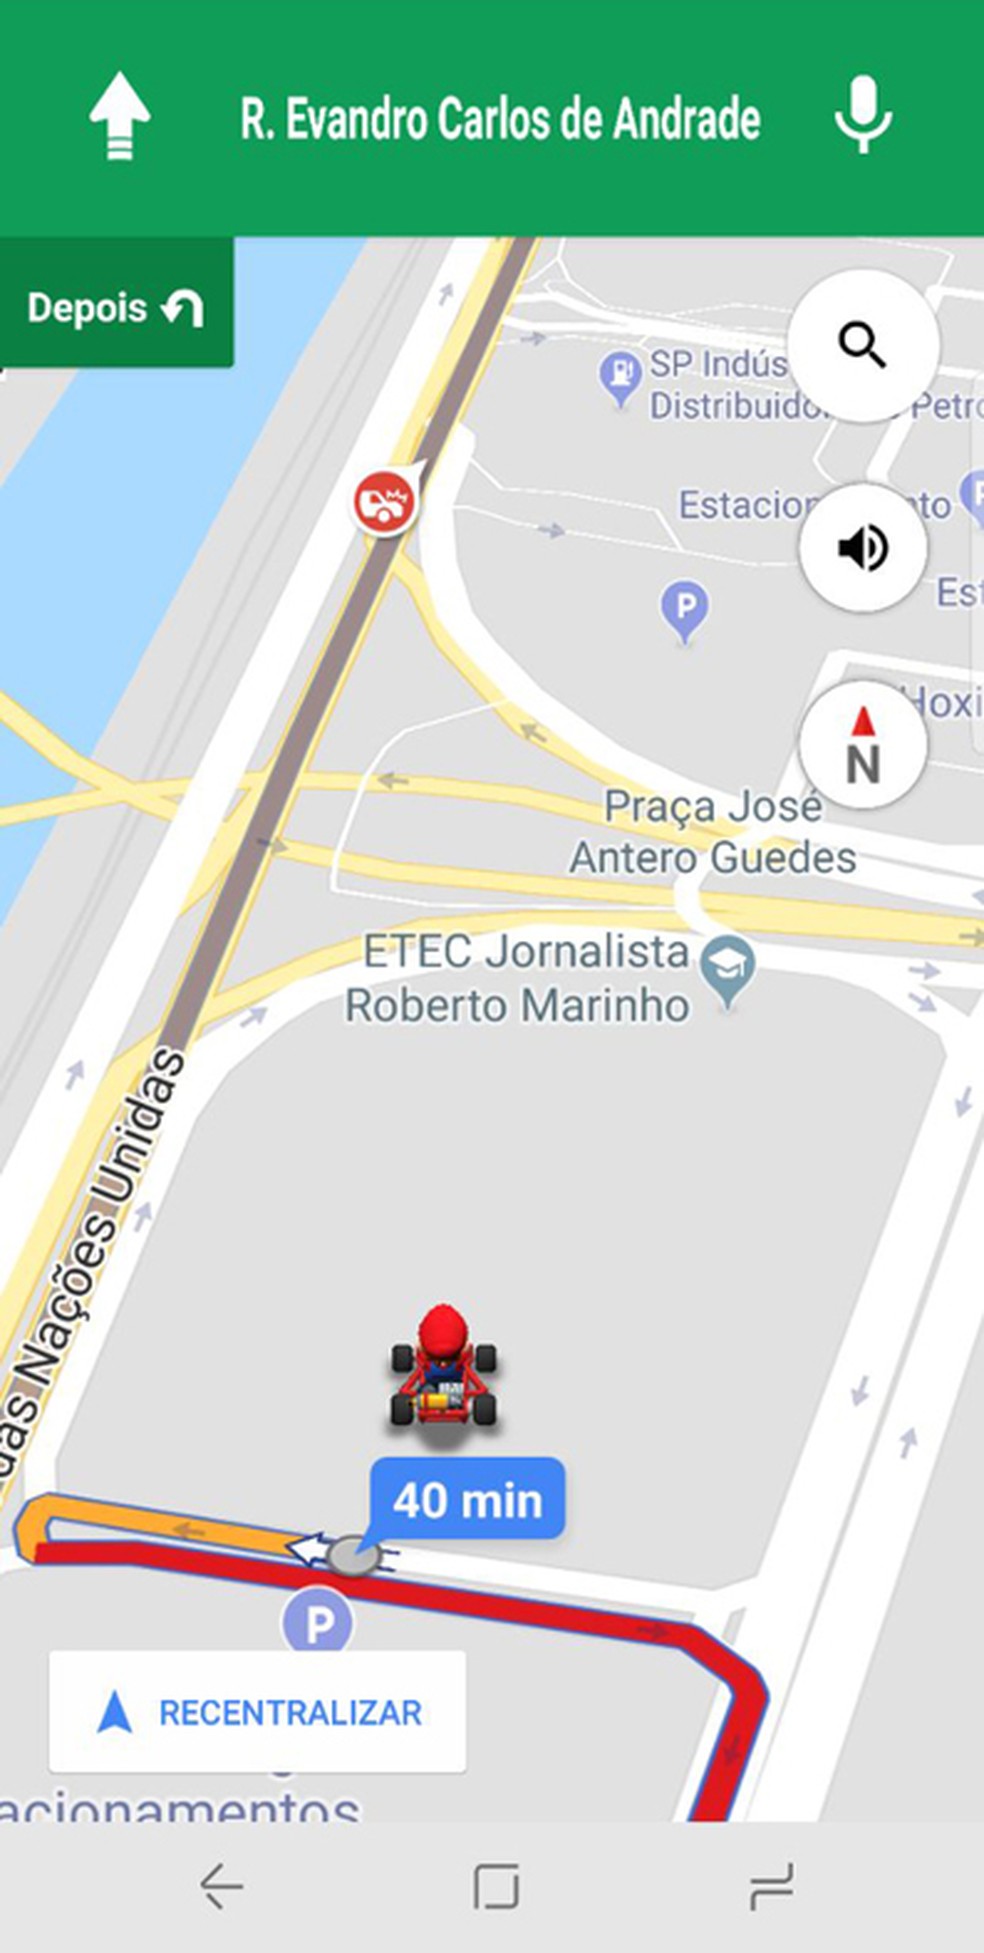 Navegação pelo Google Maps é feita no estilo 'Mario Kart' até a próxima semana (Foto: Reprodução/G1)